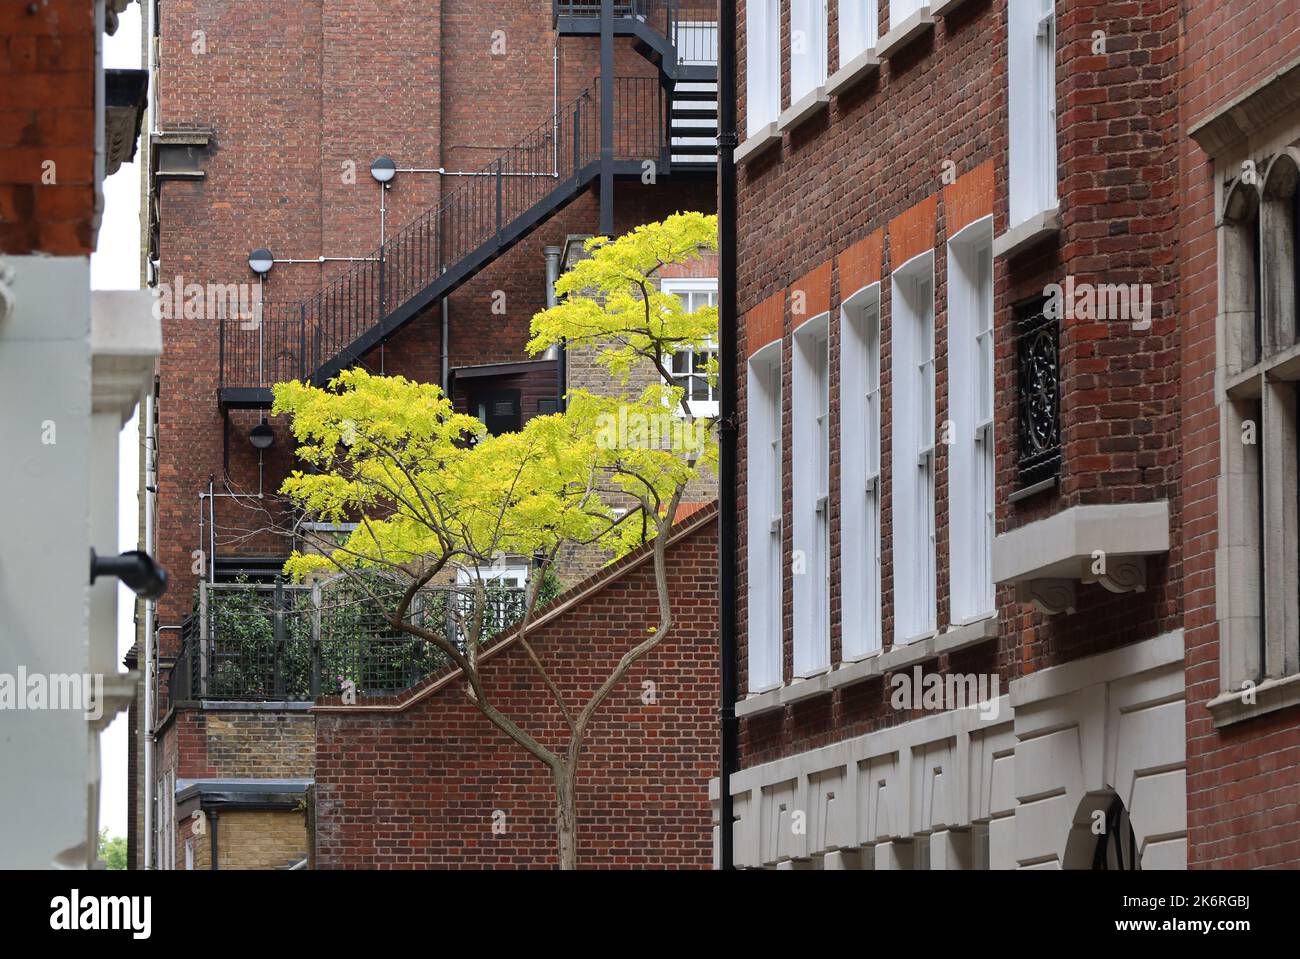 Arbre jaune parmi les bâtiments rouges de Londres Banque D'Images